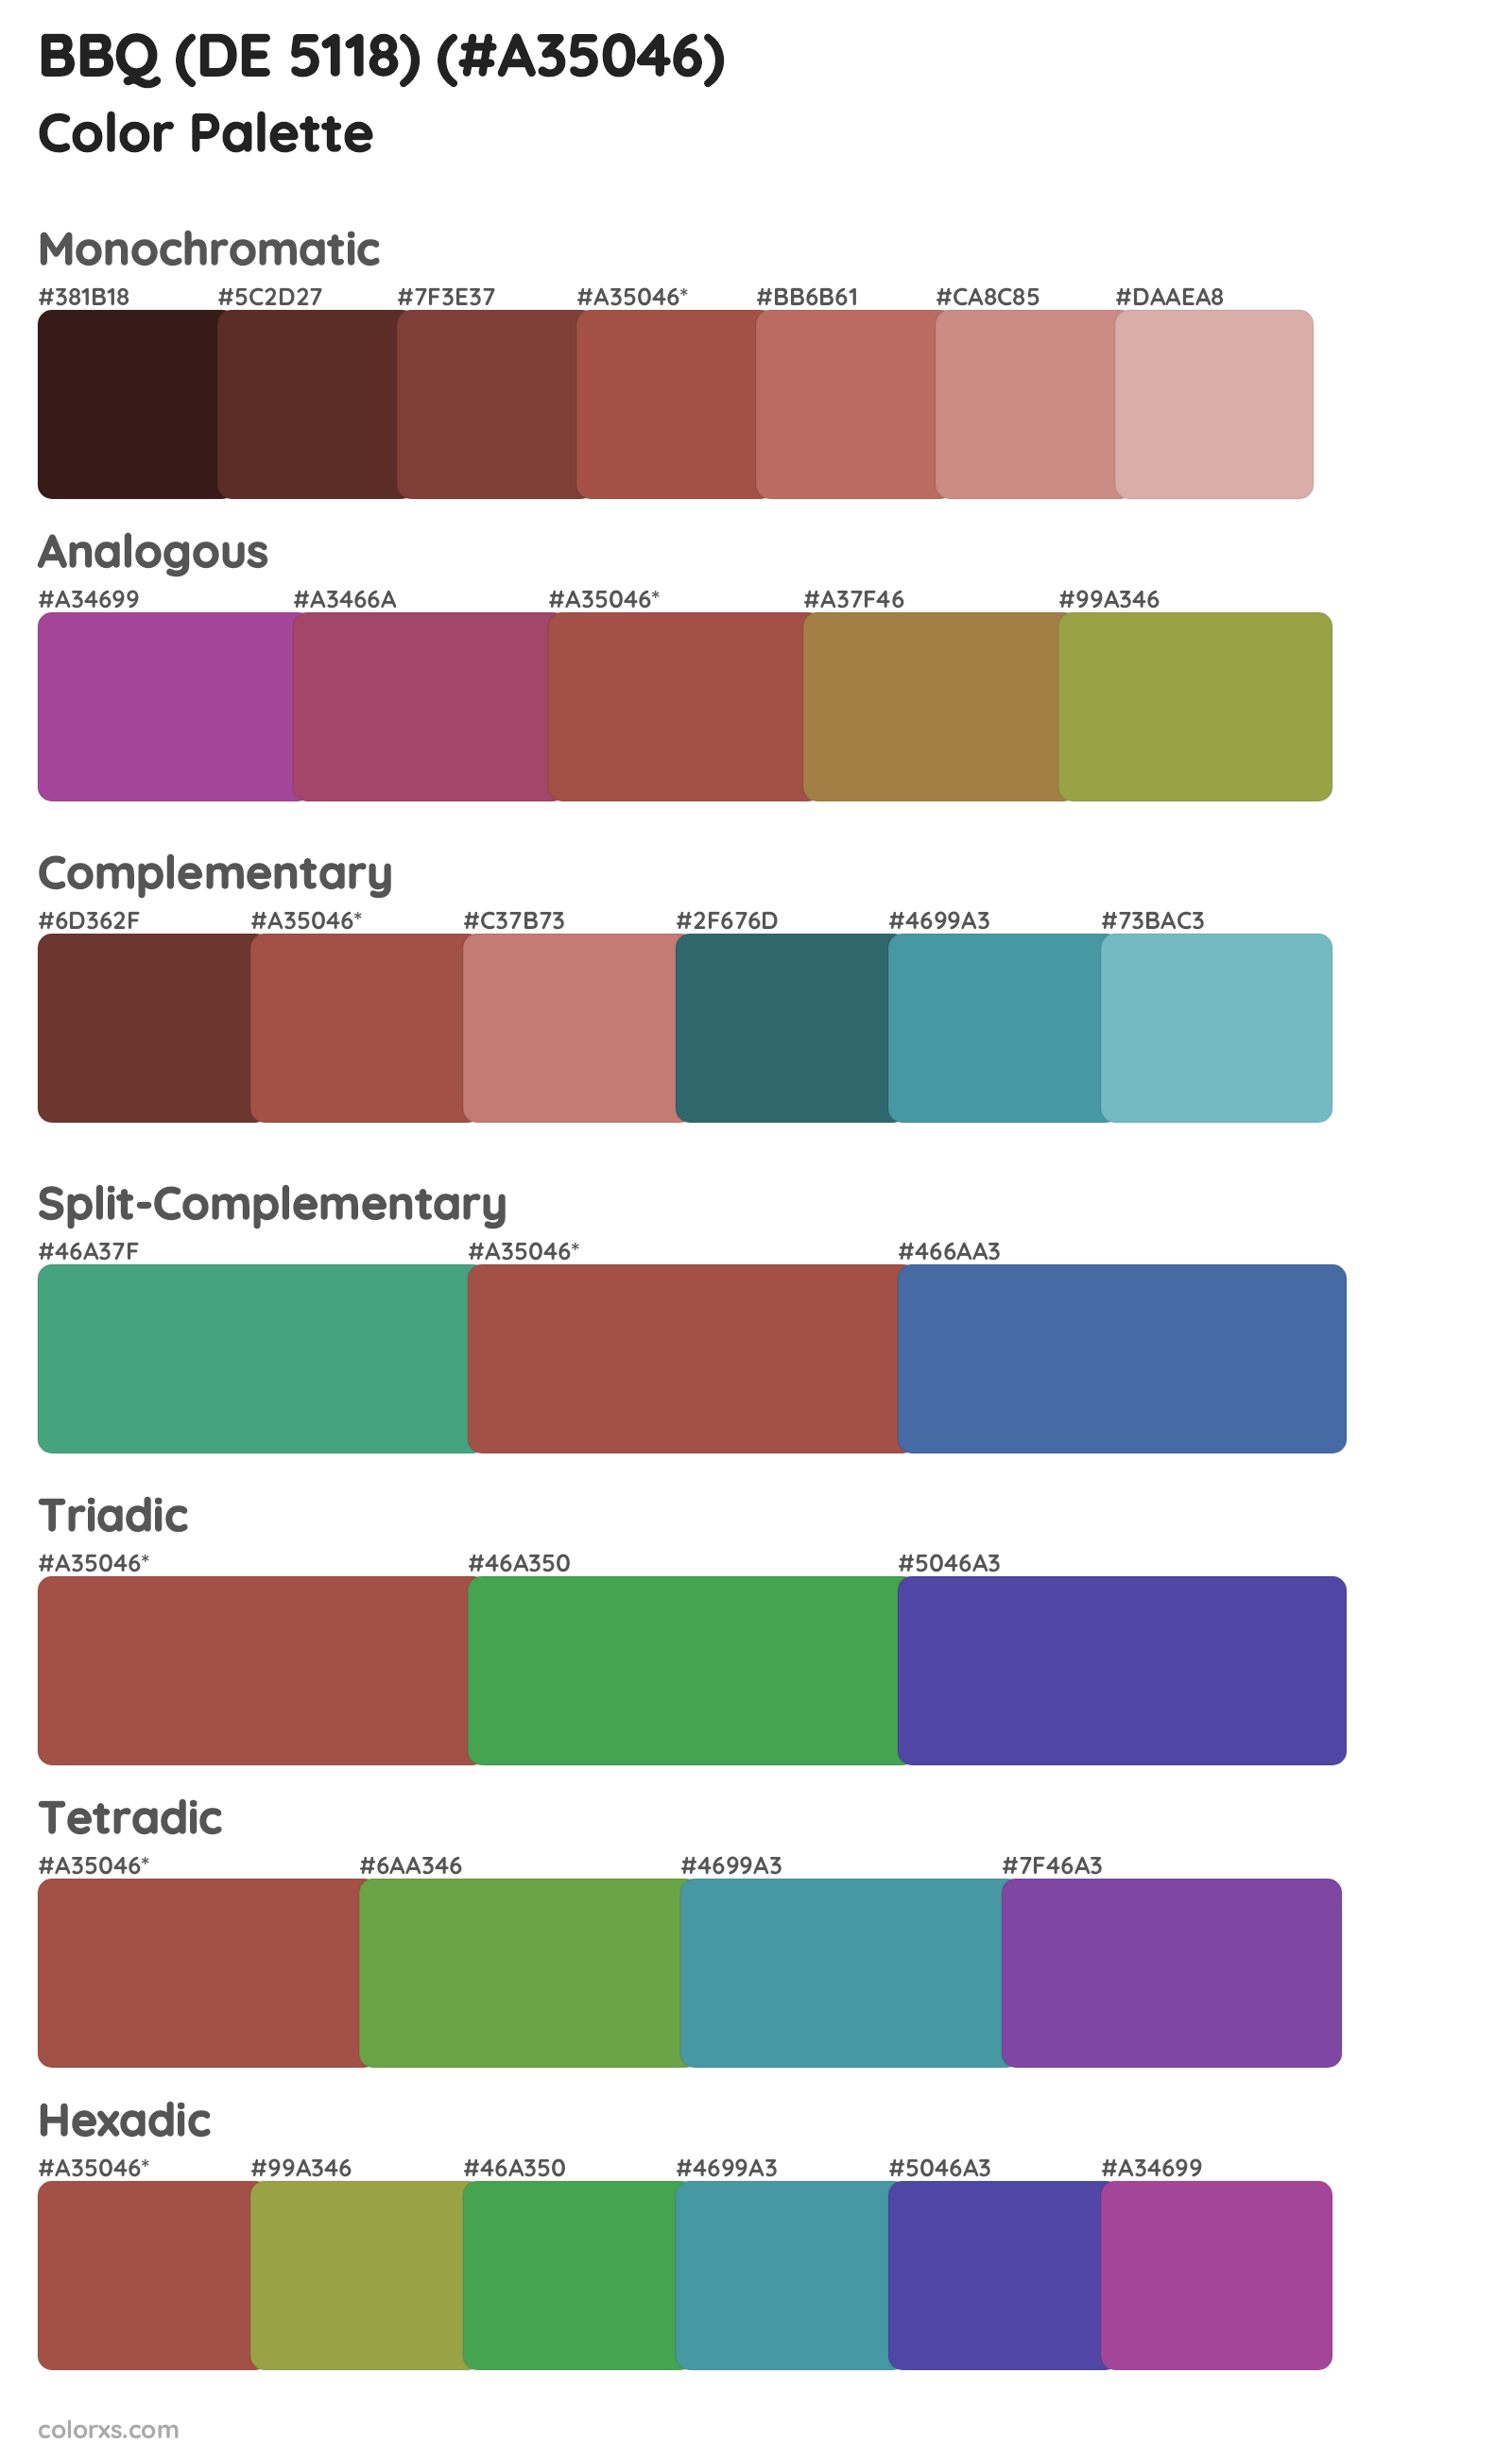 BBQ (DE 5118) Color Scheme Palettes